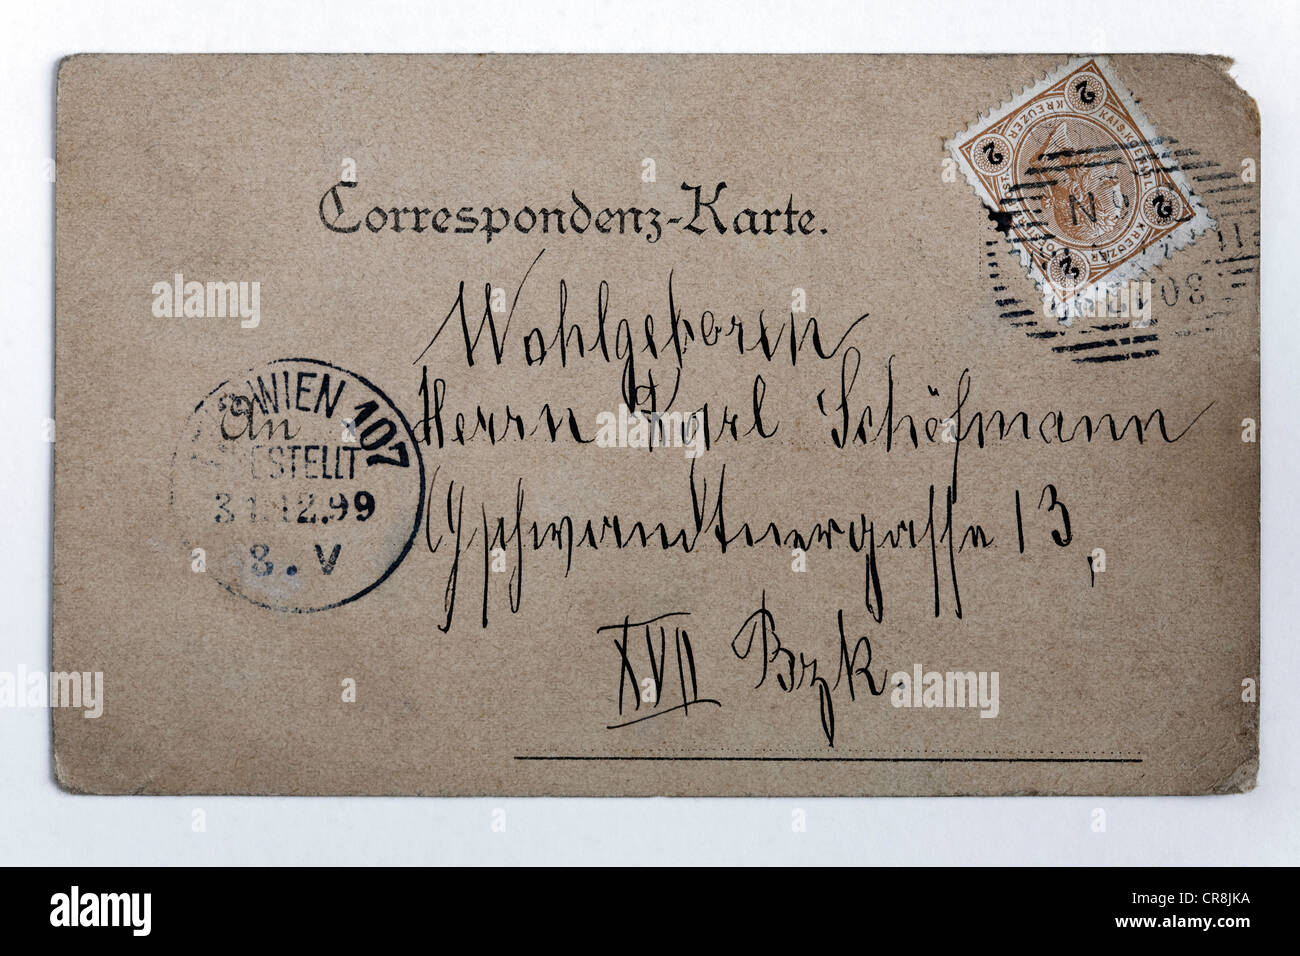 Cartolina storica con indirizzo e timbro dell'epoca dell'Impero Austriaco, Vienna, Austria, con timbro postale 1899 Foto Stock